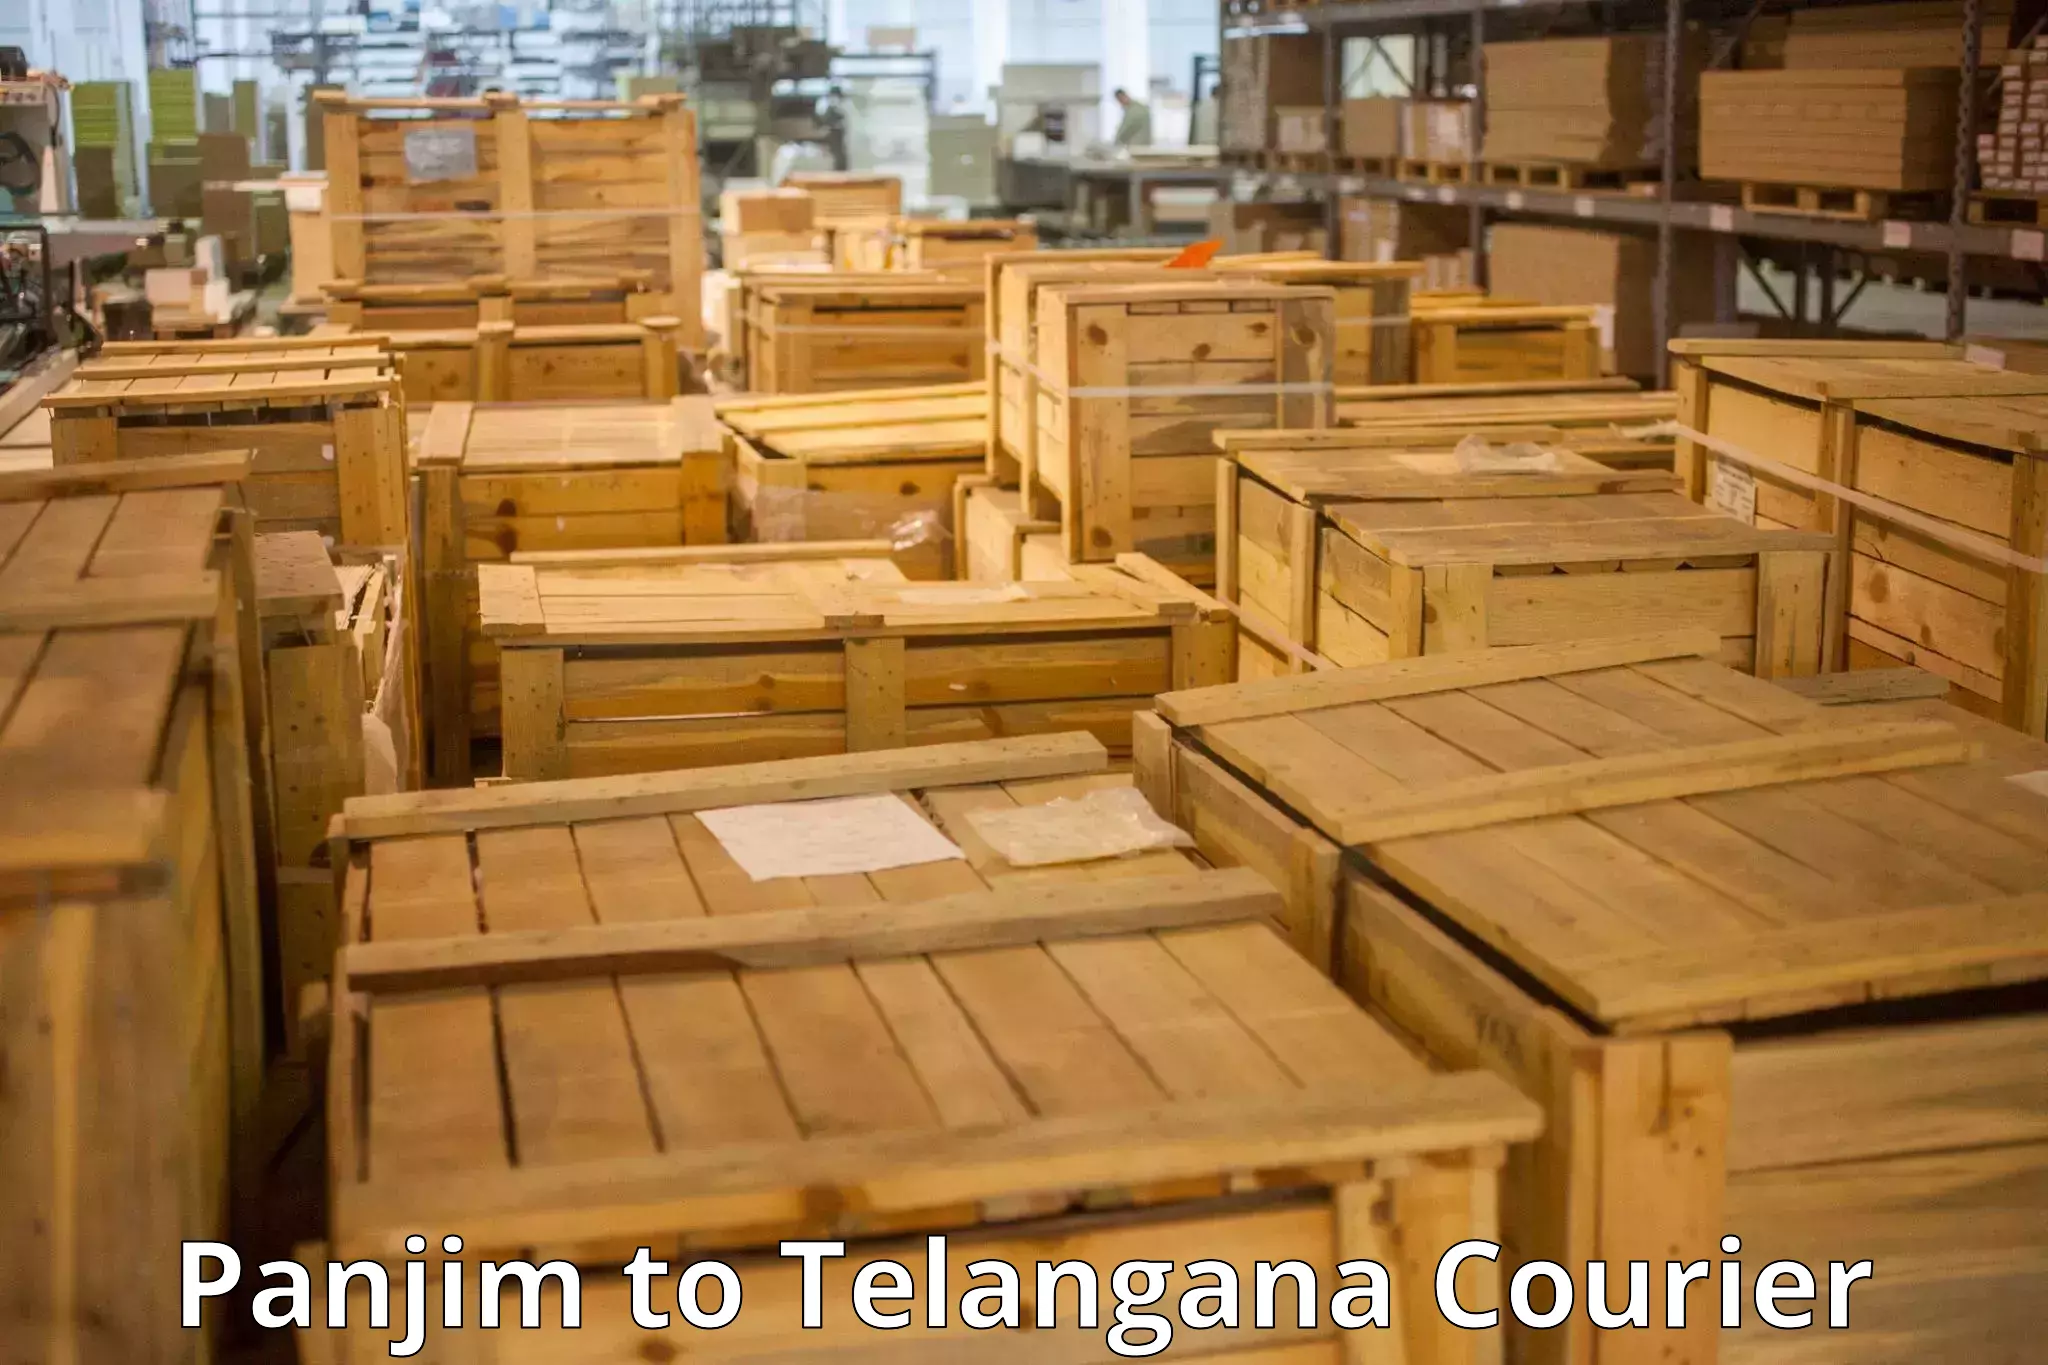 Baggage transport scheduler Panjim to Telangana